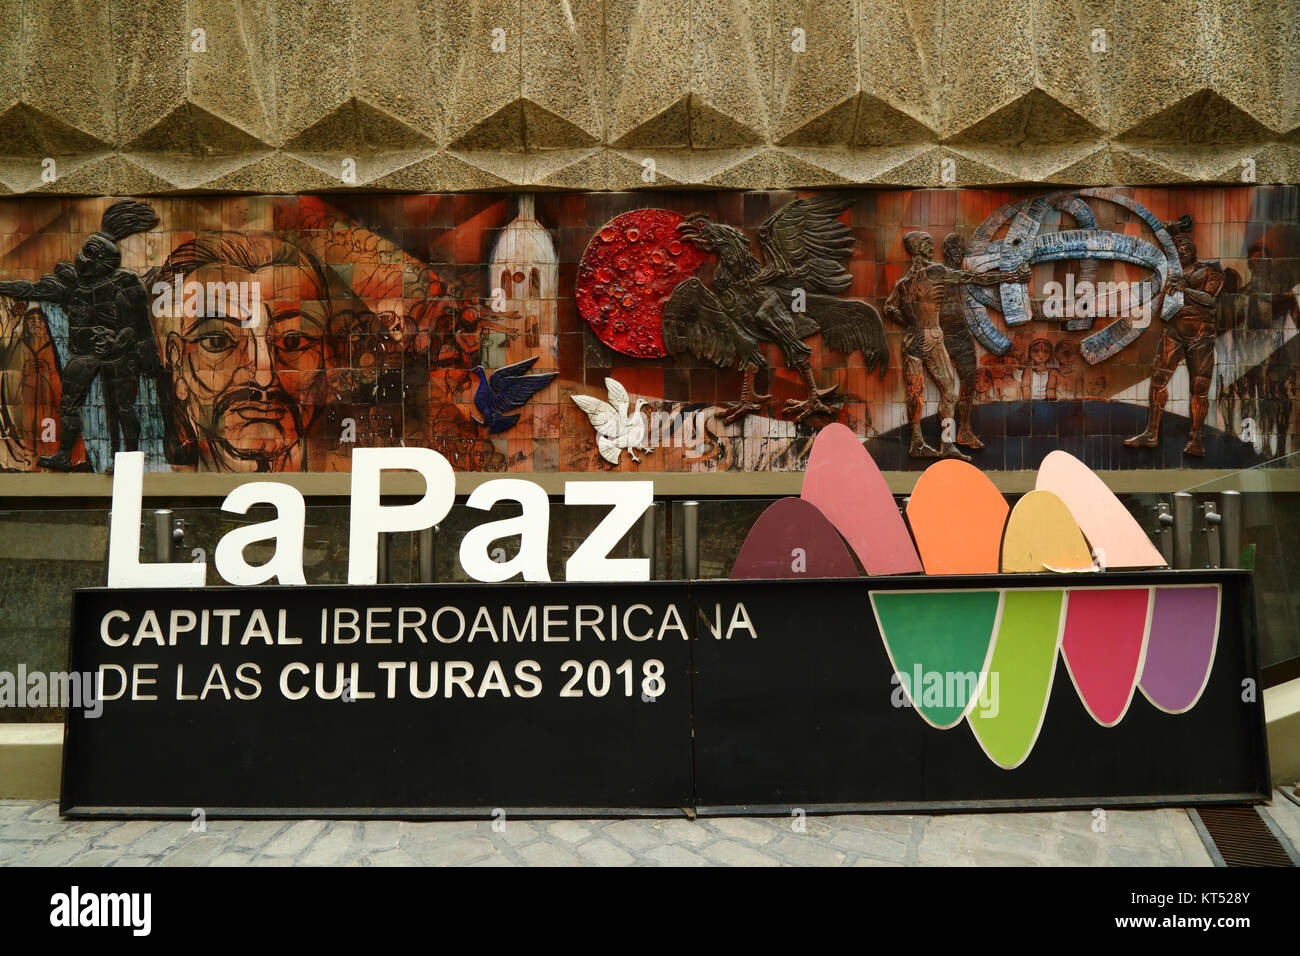 Mural dietro la Casa de Cultura e iberoamericano sulle capitali della cultura 2018 segno, La Paz, Bolivia Foto Stock